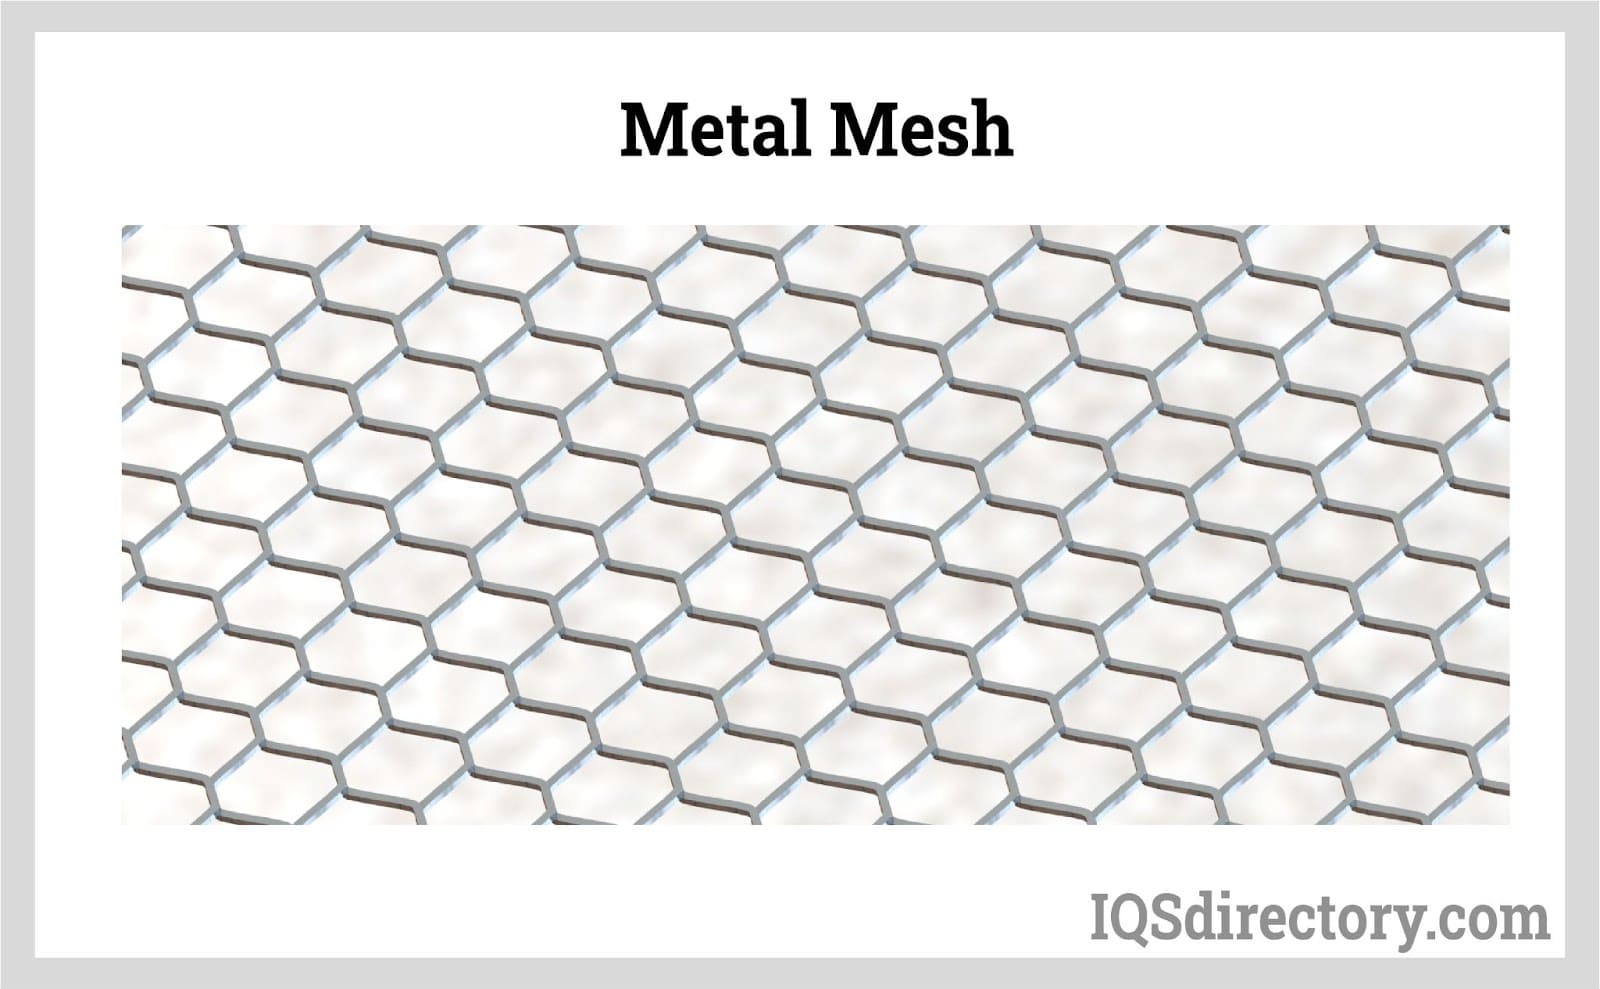 wetenschappelijk praktijk Ongeëvenaard Metal Mesh: Types, Materials, Patterns, Benefits and Applications